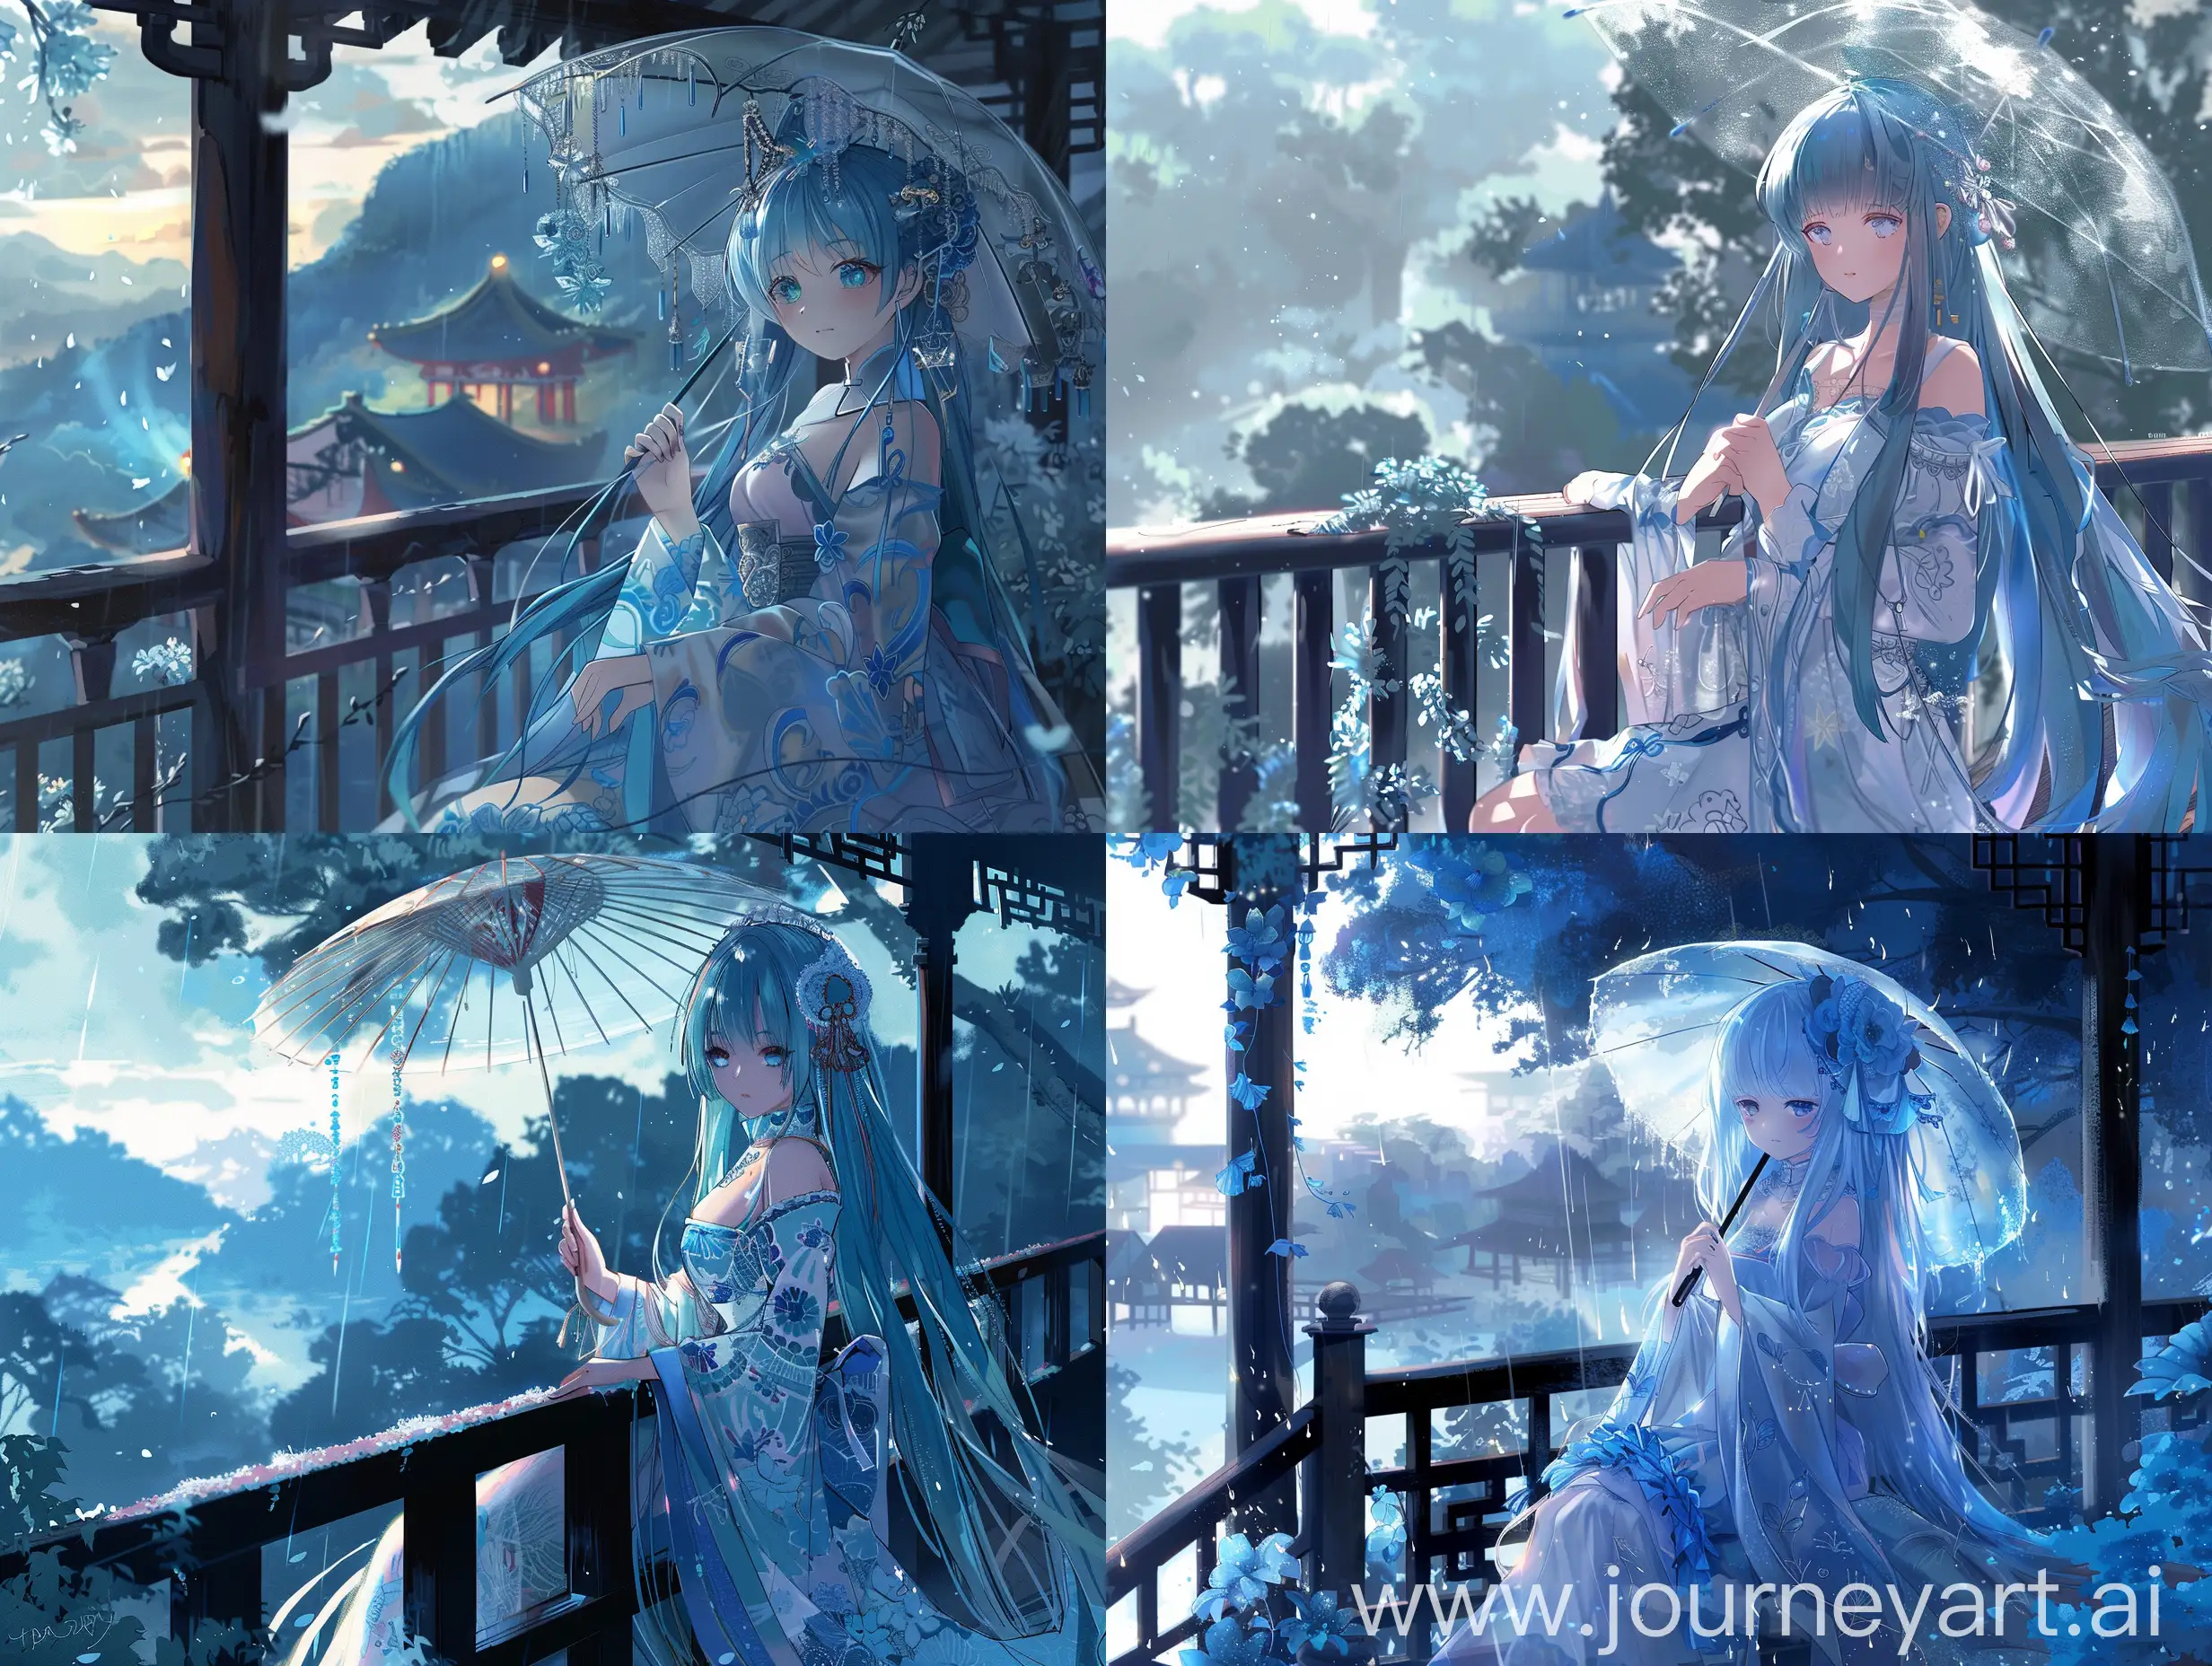 Ethereal-Anime-Girl-with-Blue-Hair-on-Serene-Balcony